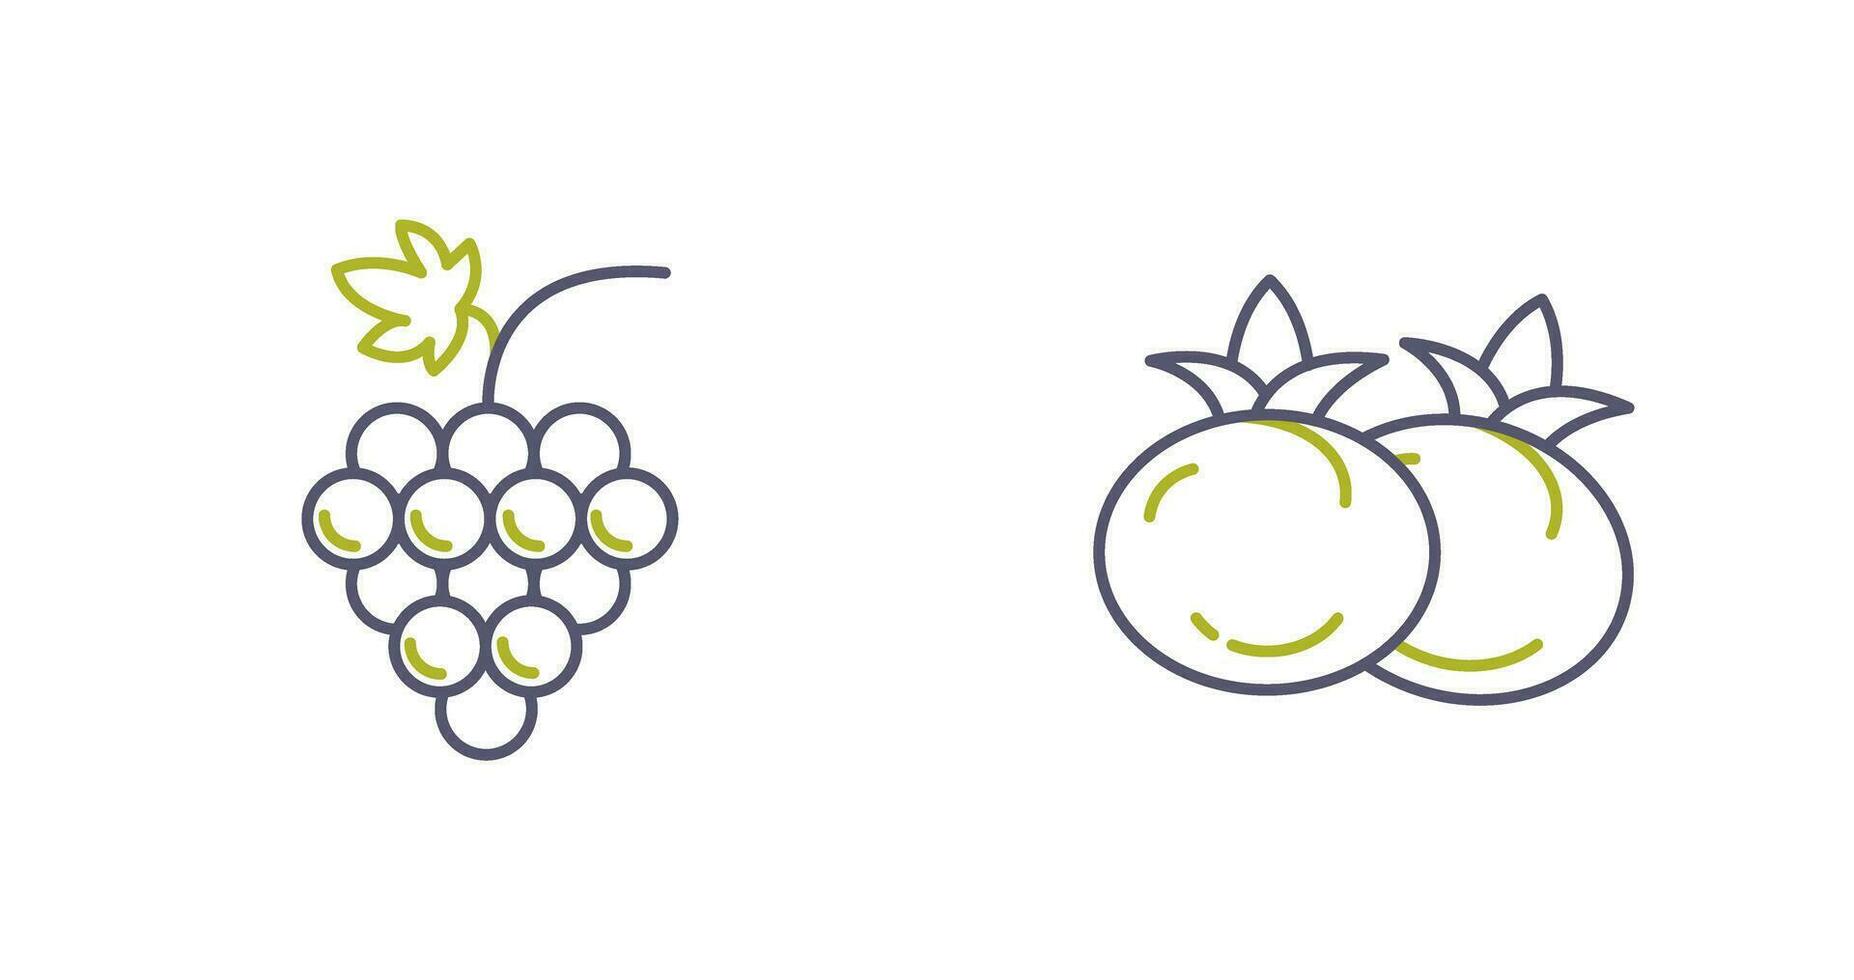 Grapes and Tomato Icon vector